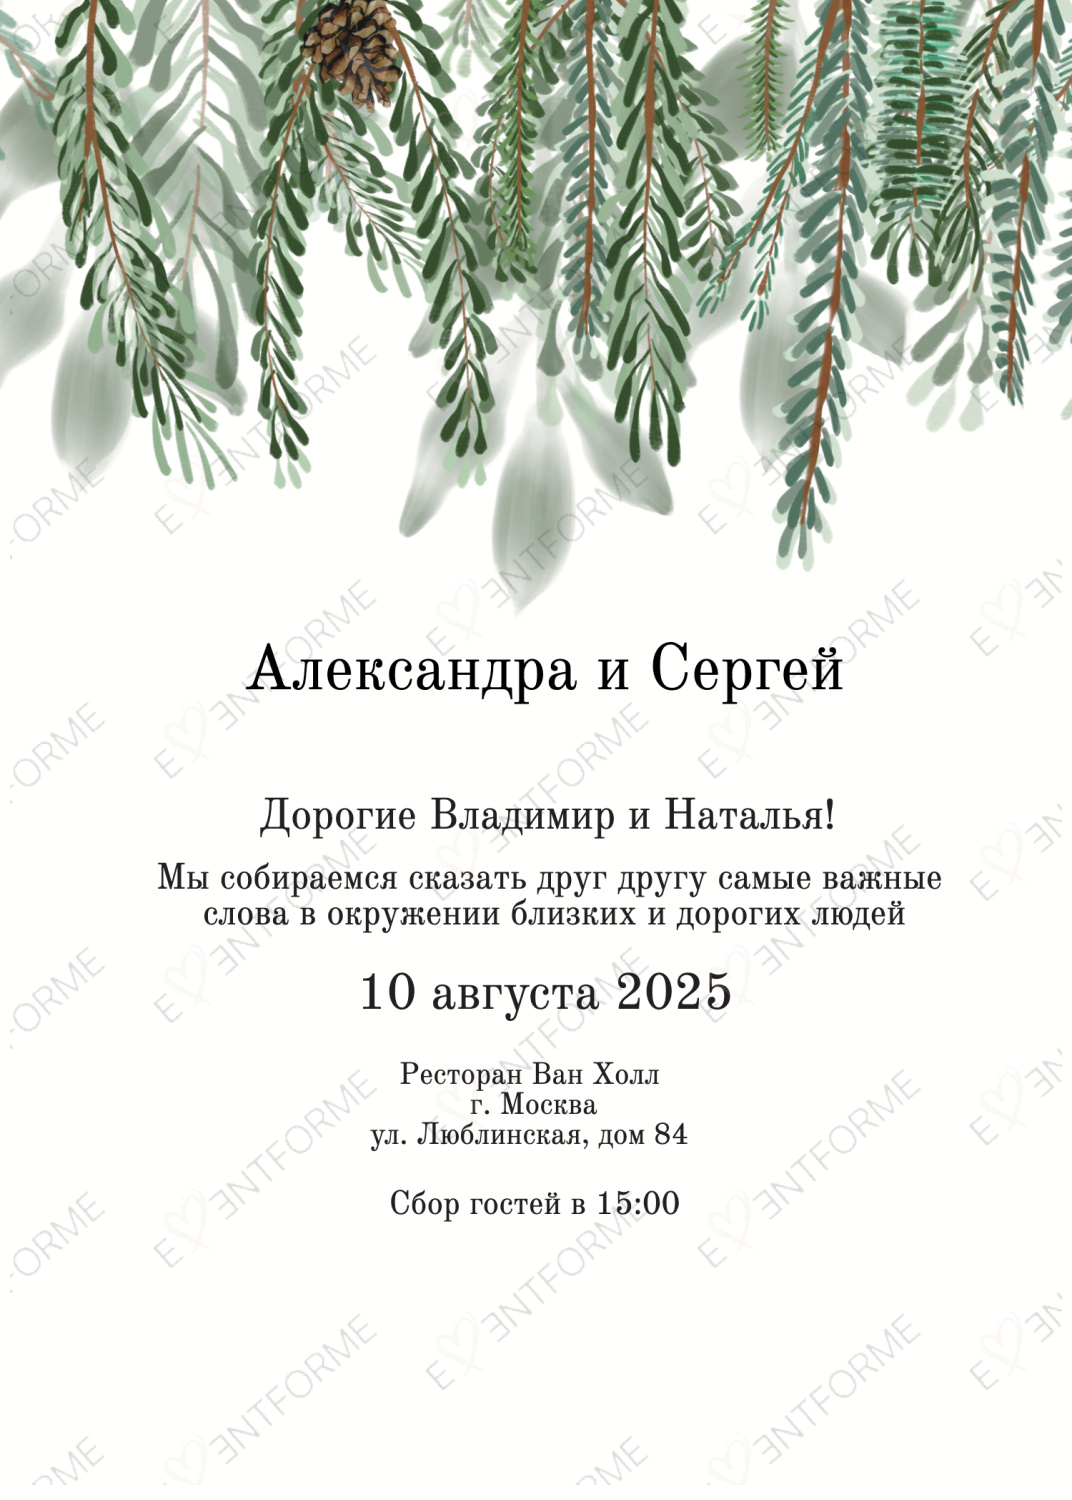 Приглашение рустик "Ветви деревьев"